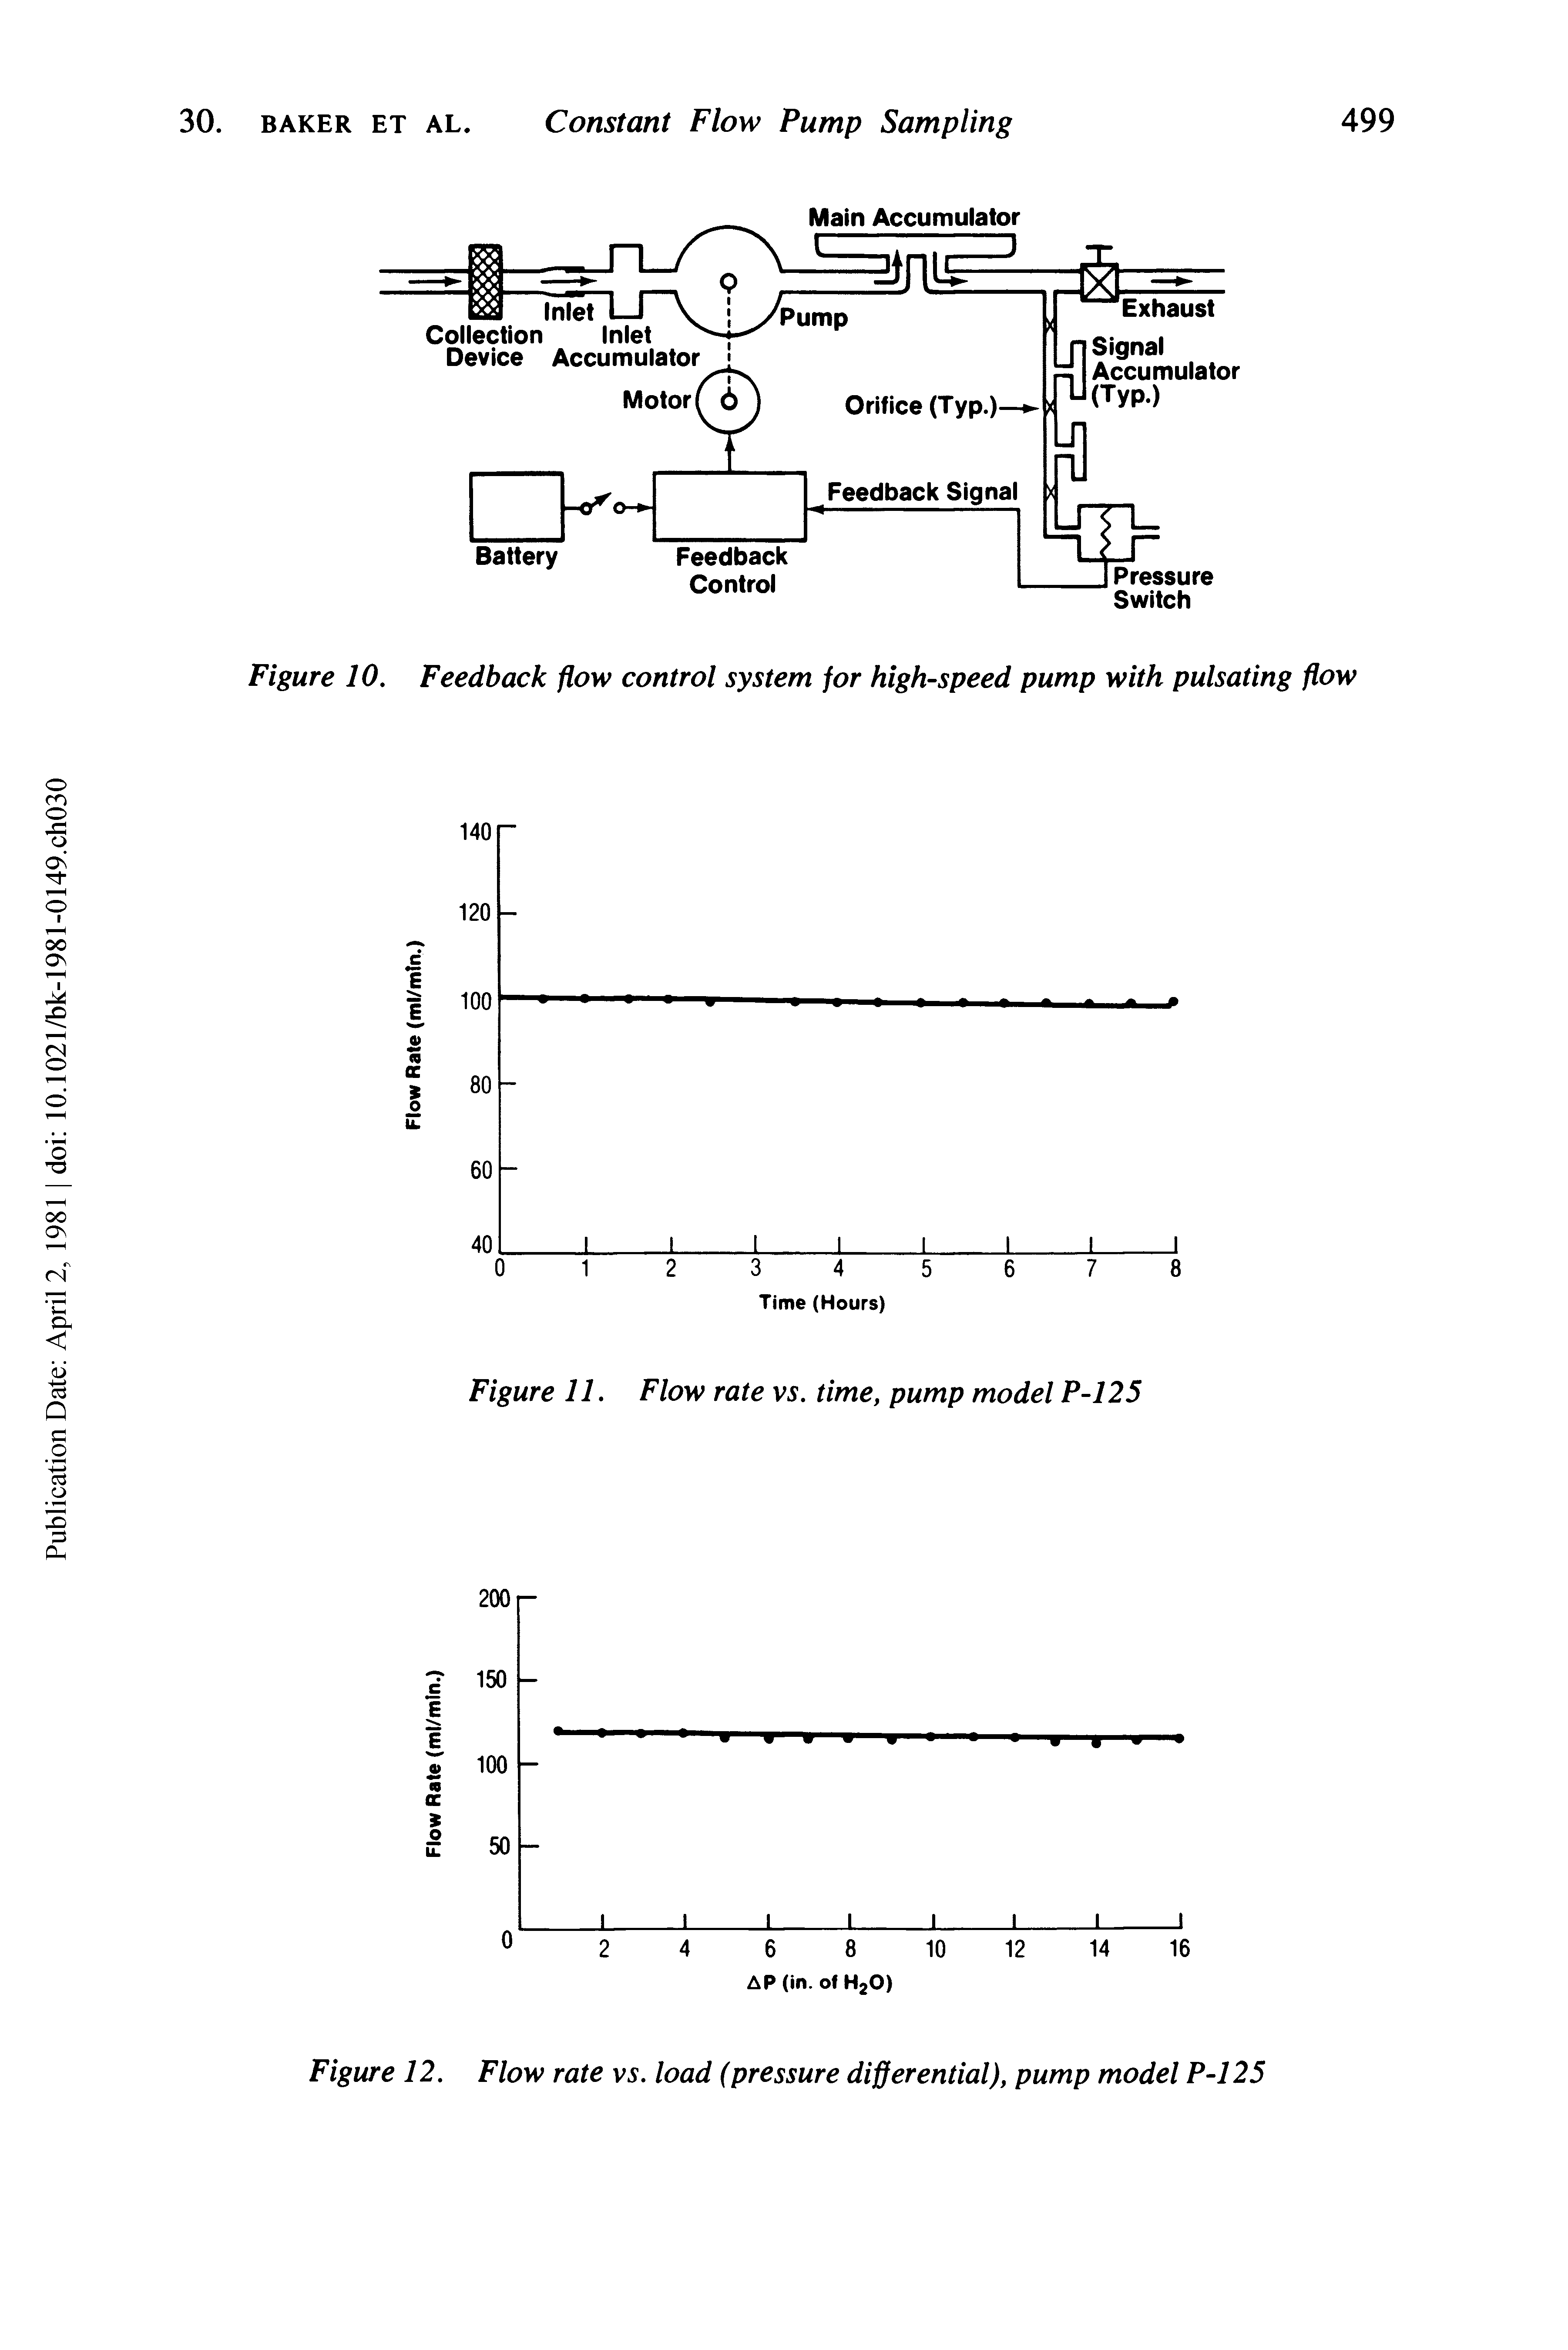 Figure 11. Flow rate vs. time, pump model P-125...